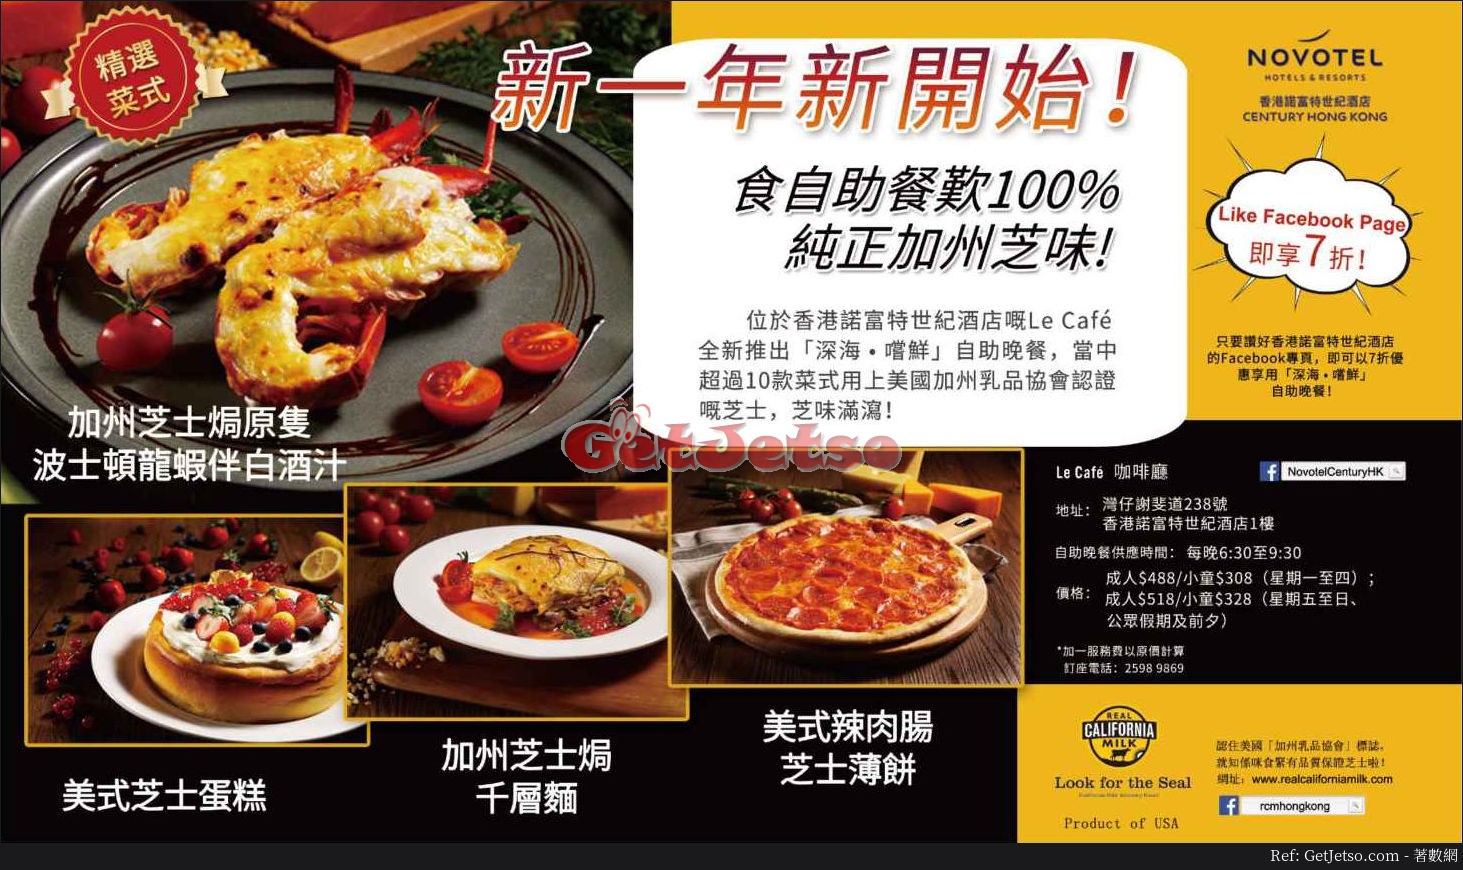 香港諾富特世紀酒店低至7折自助餐優惠(至18年1月31日)圖片1